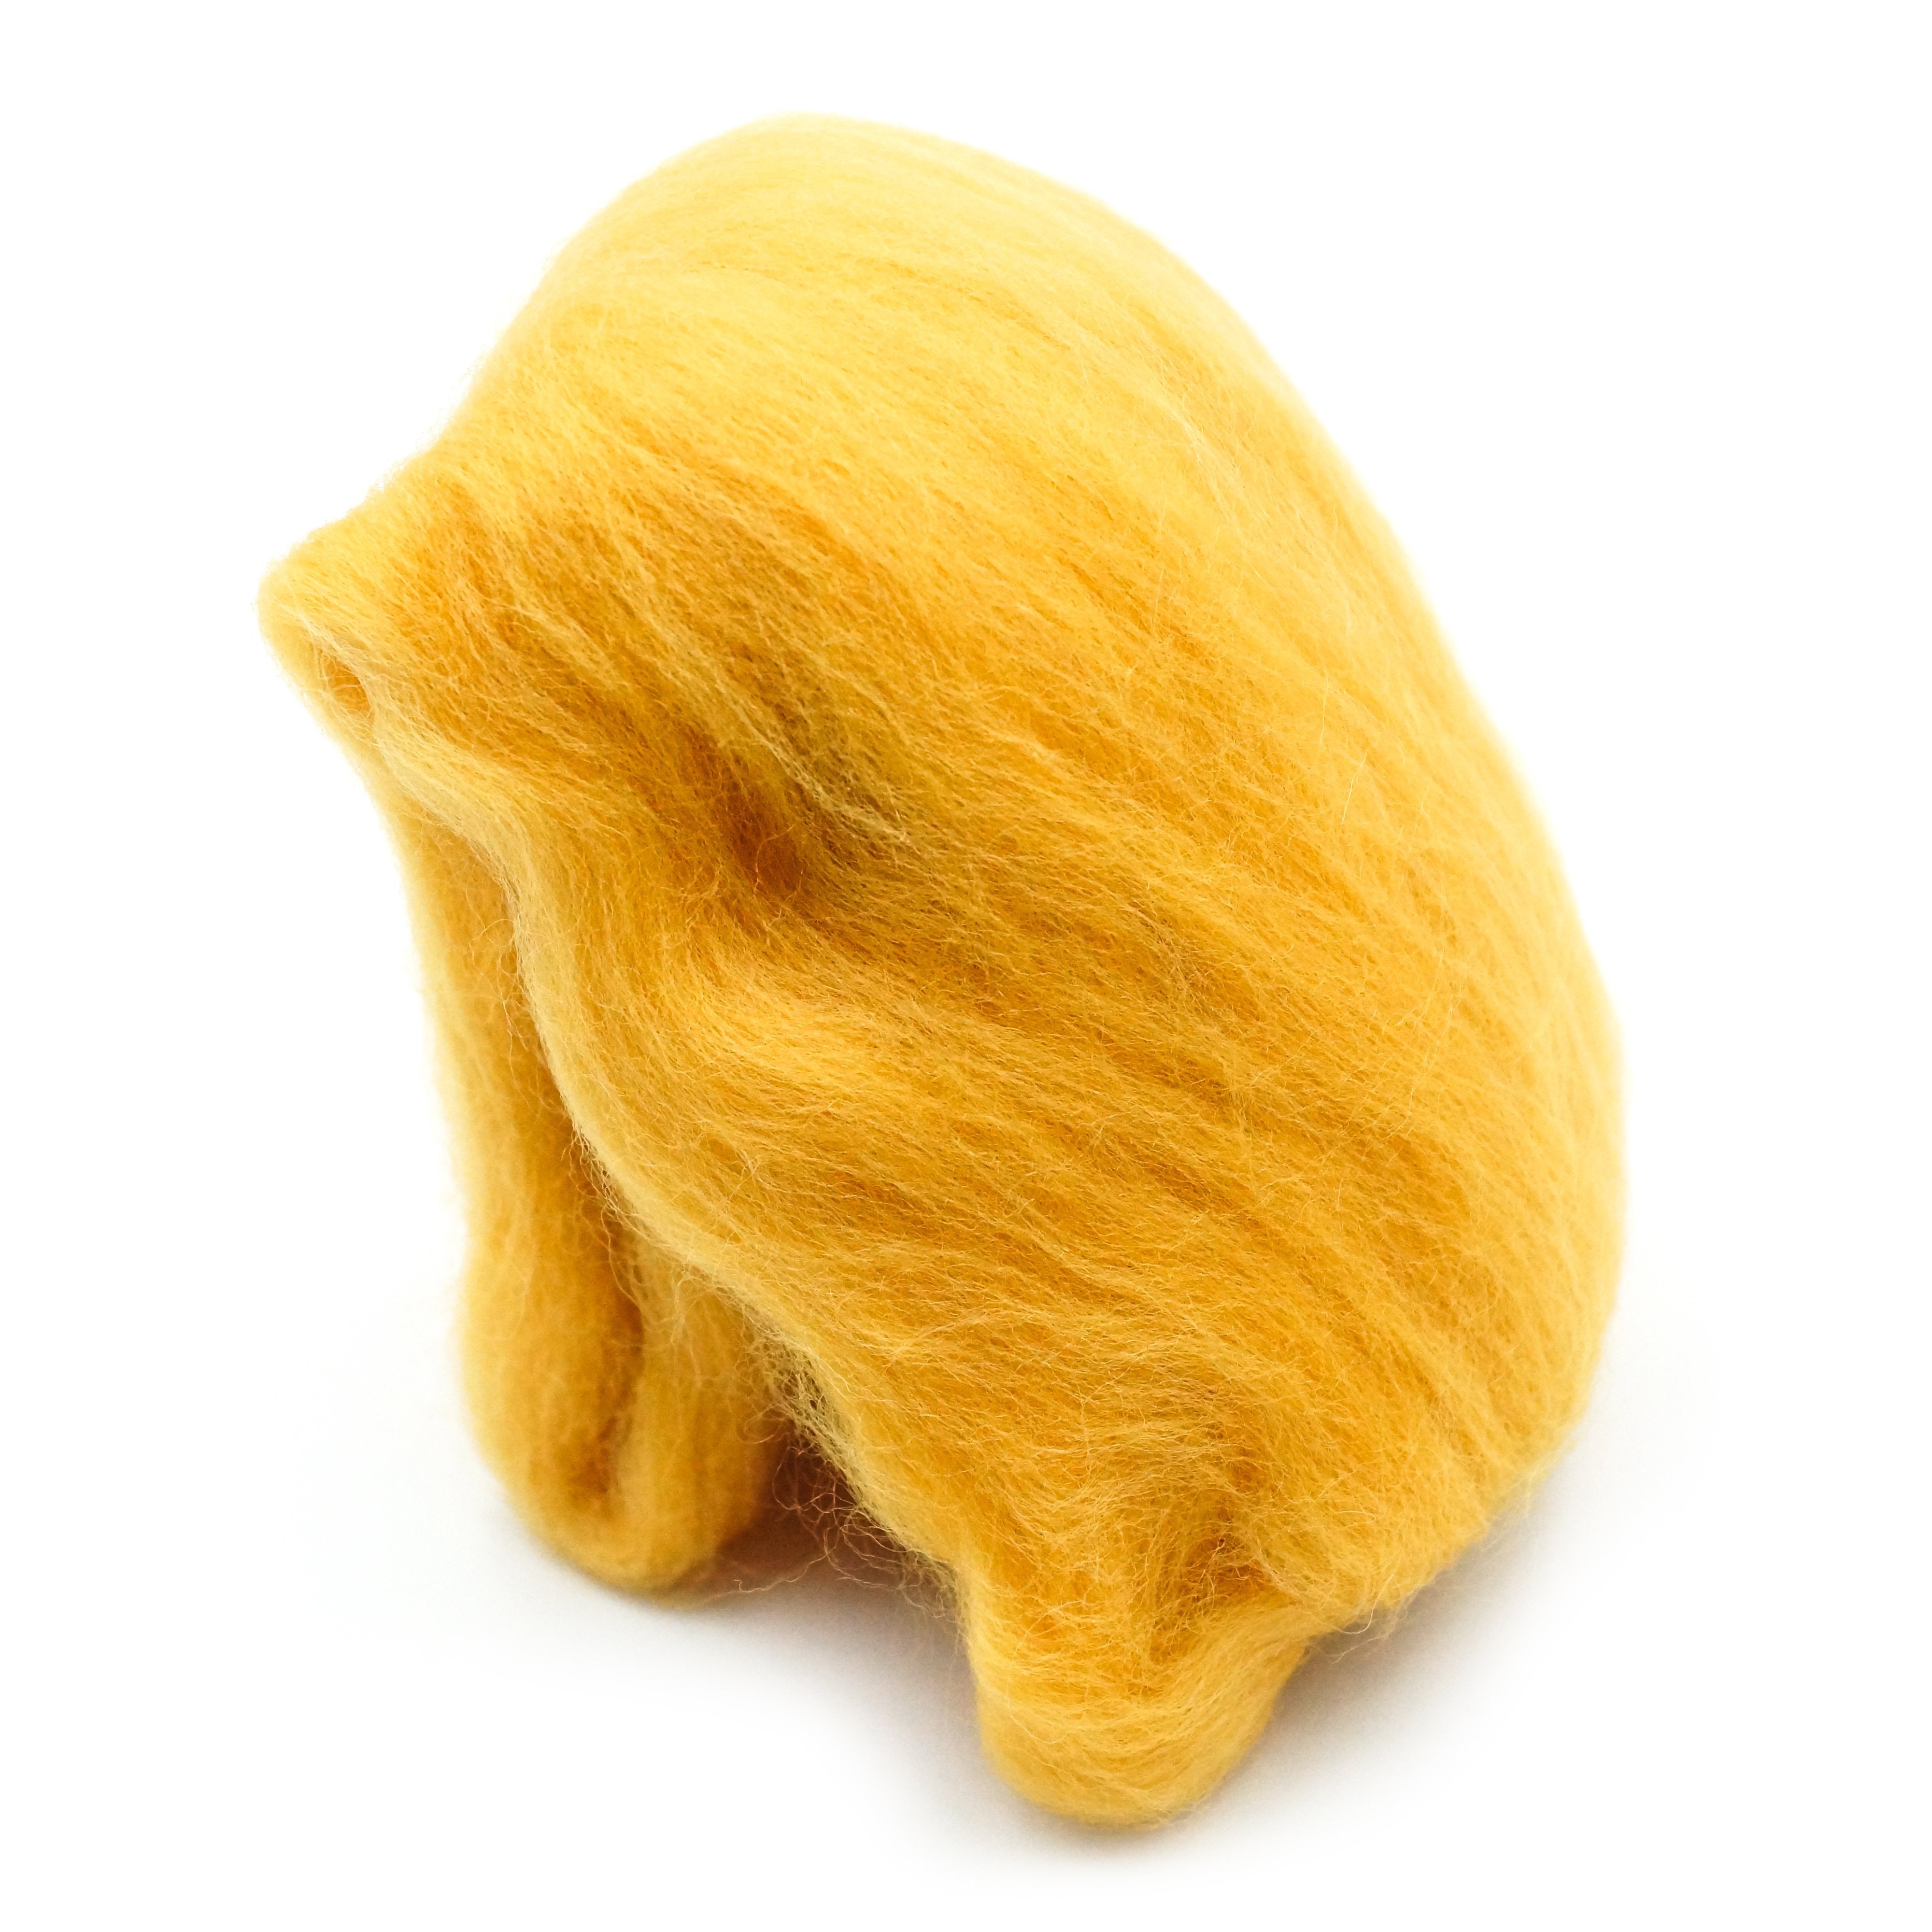 CLV - Natural Wool Roving (Gold)